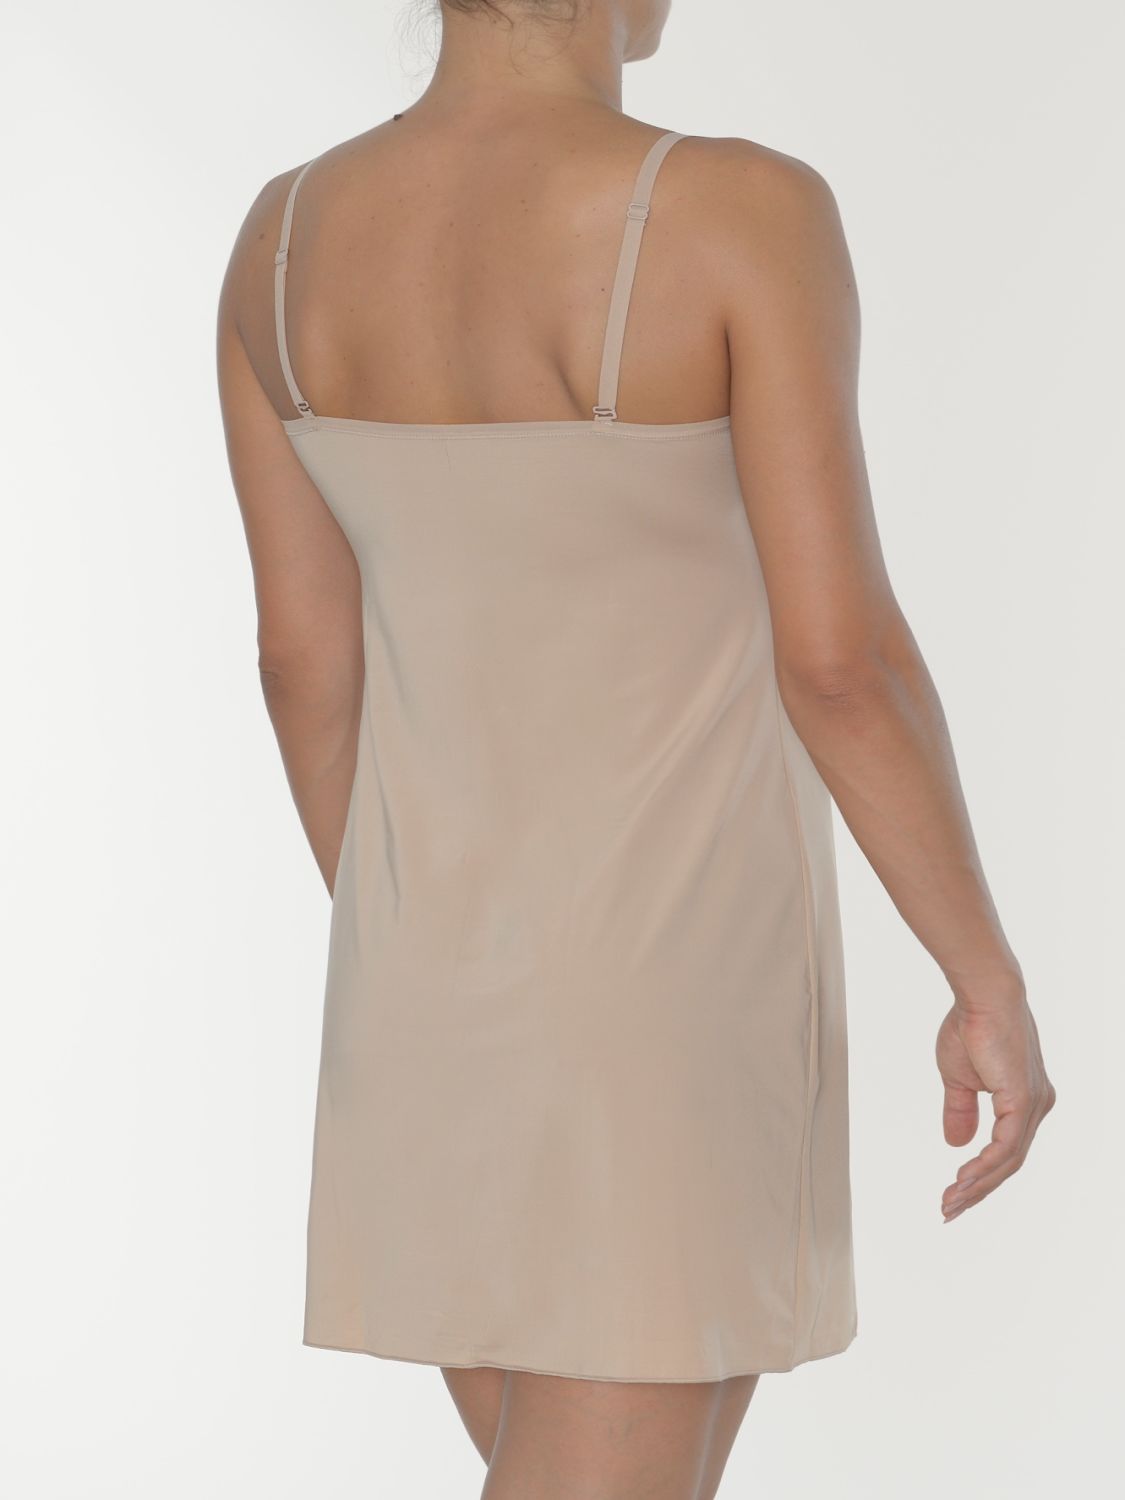 Triumph Unterkleid Body Make-Up Dress 01 Farbe Smooth Skin